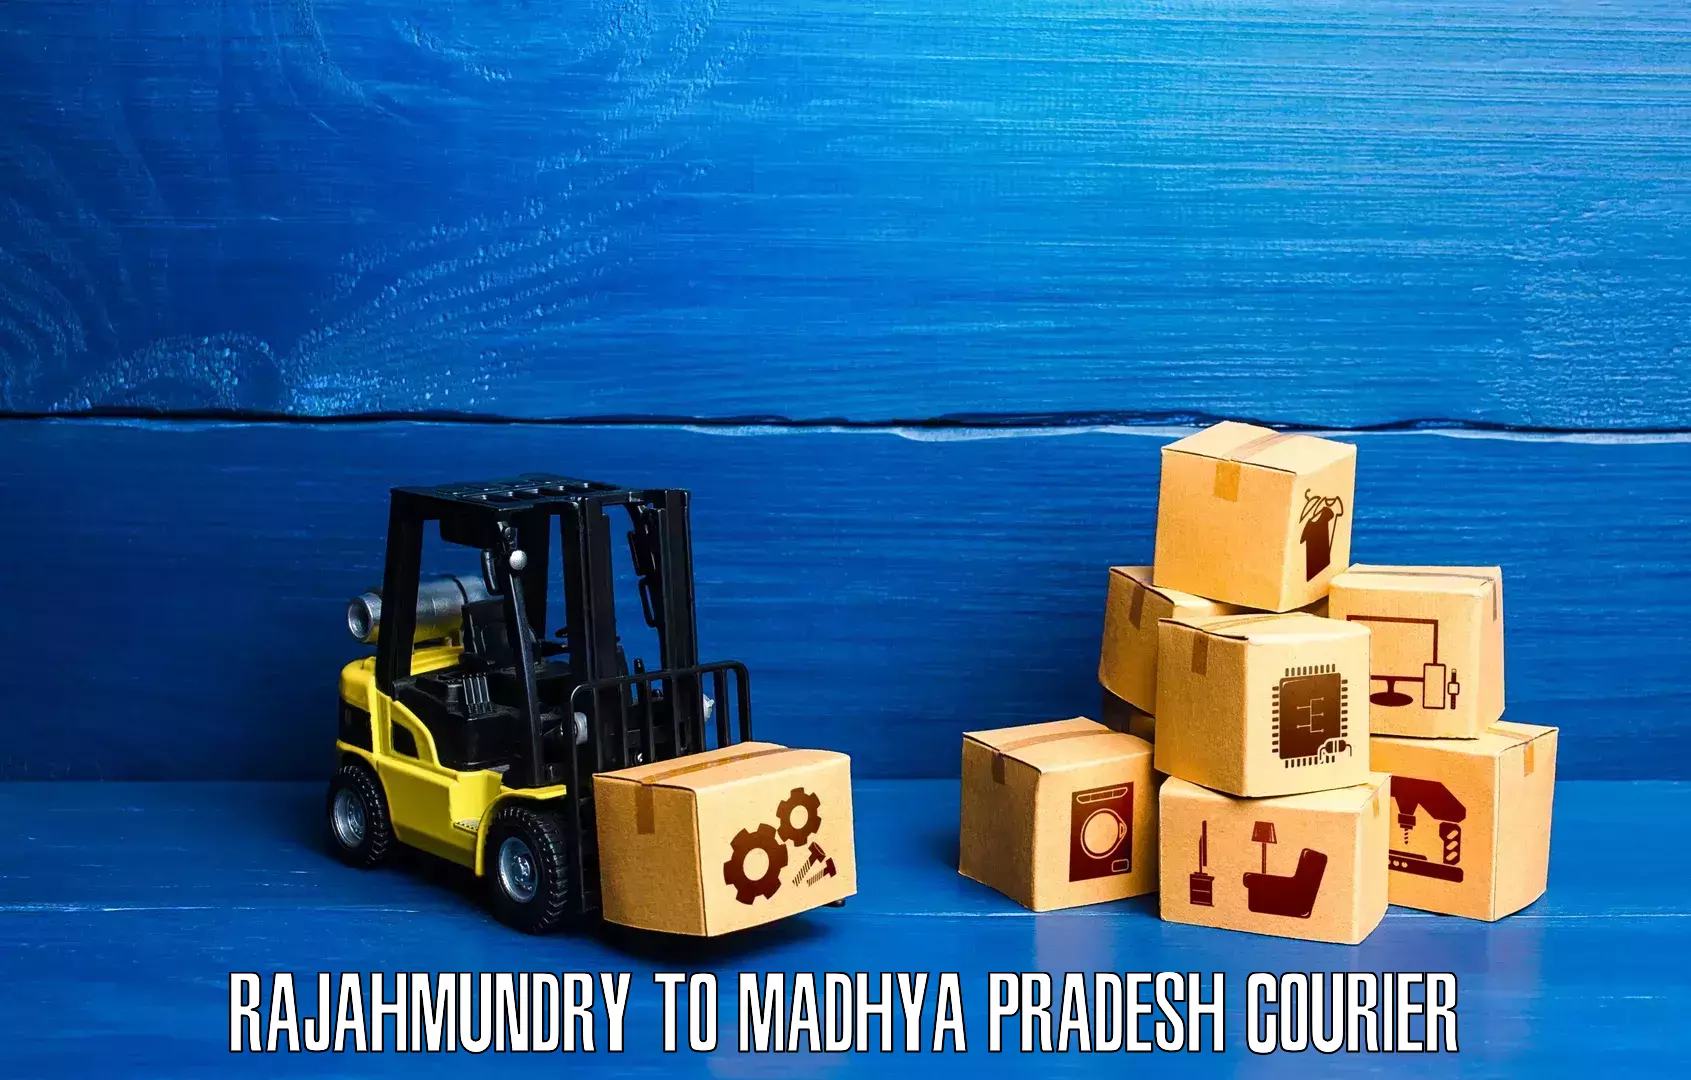 Enhanced tracking features Rajahmundry to Maheshwar